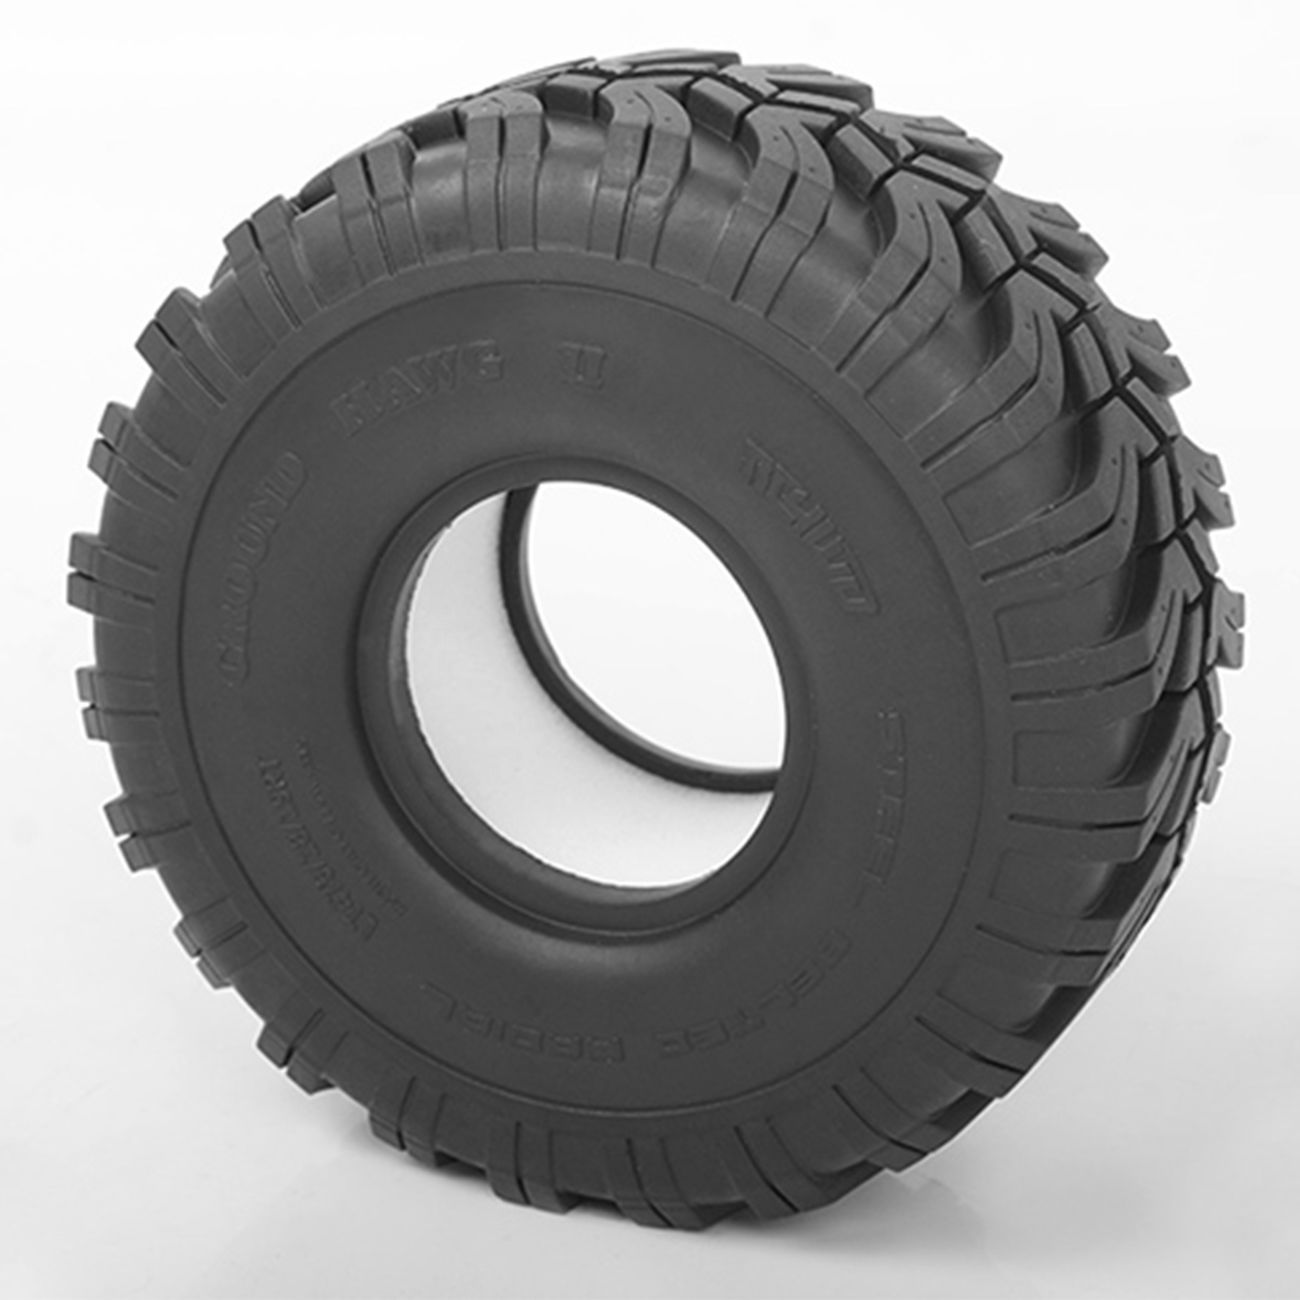 RC4WD 1:10 Reifen Interco Ground Hawg 1.9 Scale Tires X2 SS mit Einlagen (2 Stück) Z-T0156 Bild 1